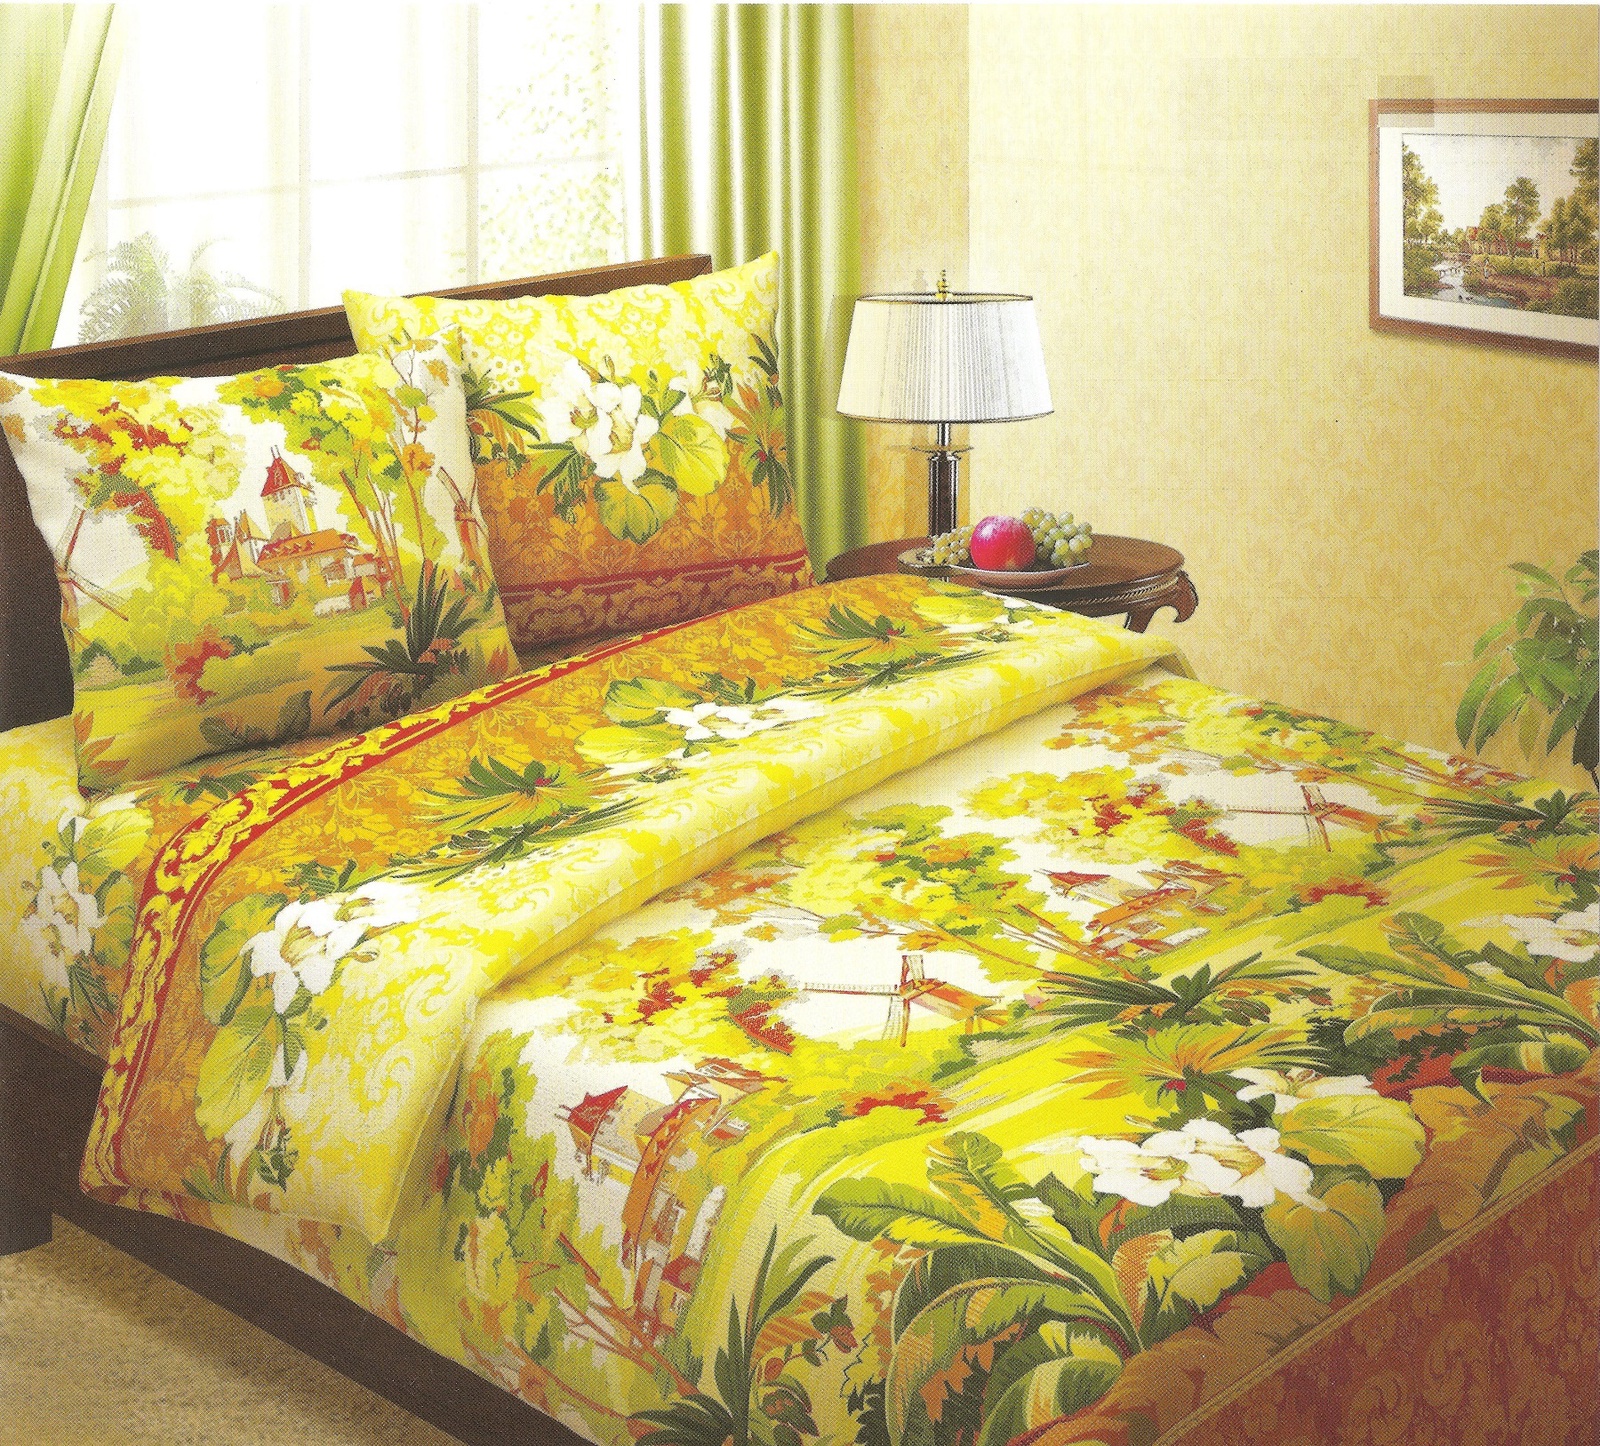 фото Комплект постельного белья BegAl бязь, БК002-516-1, коричневый, желтый, зеленый